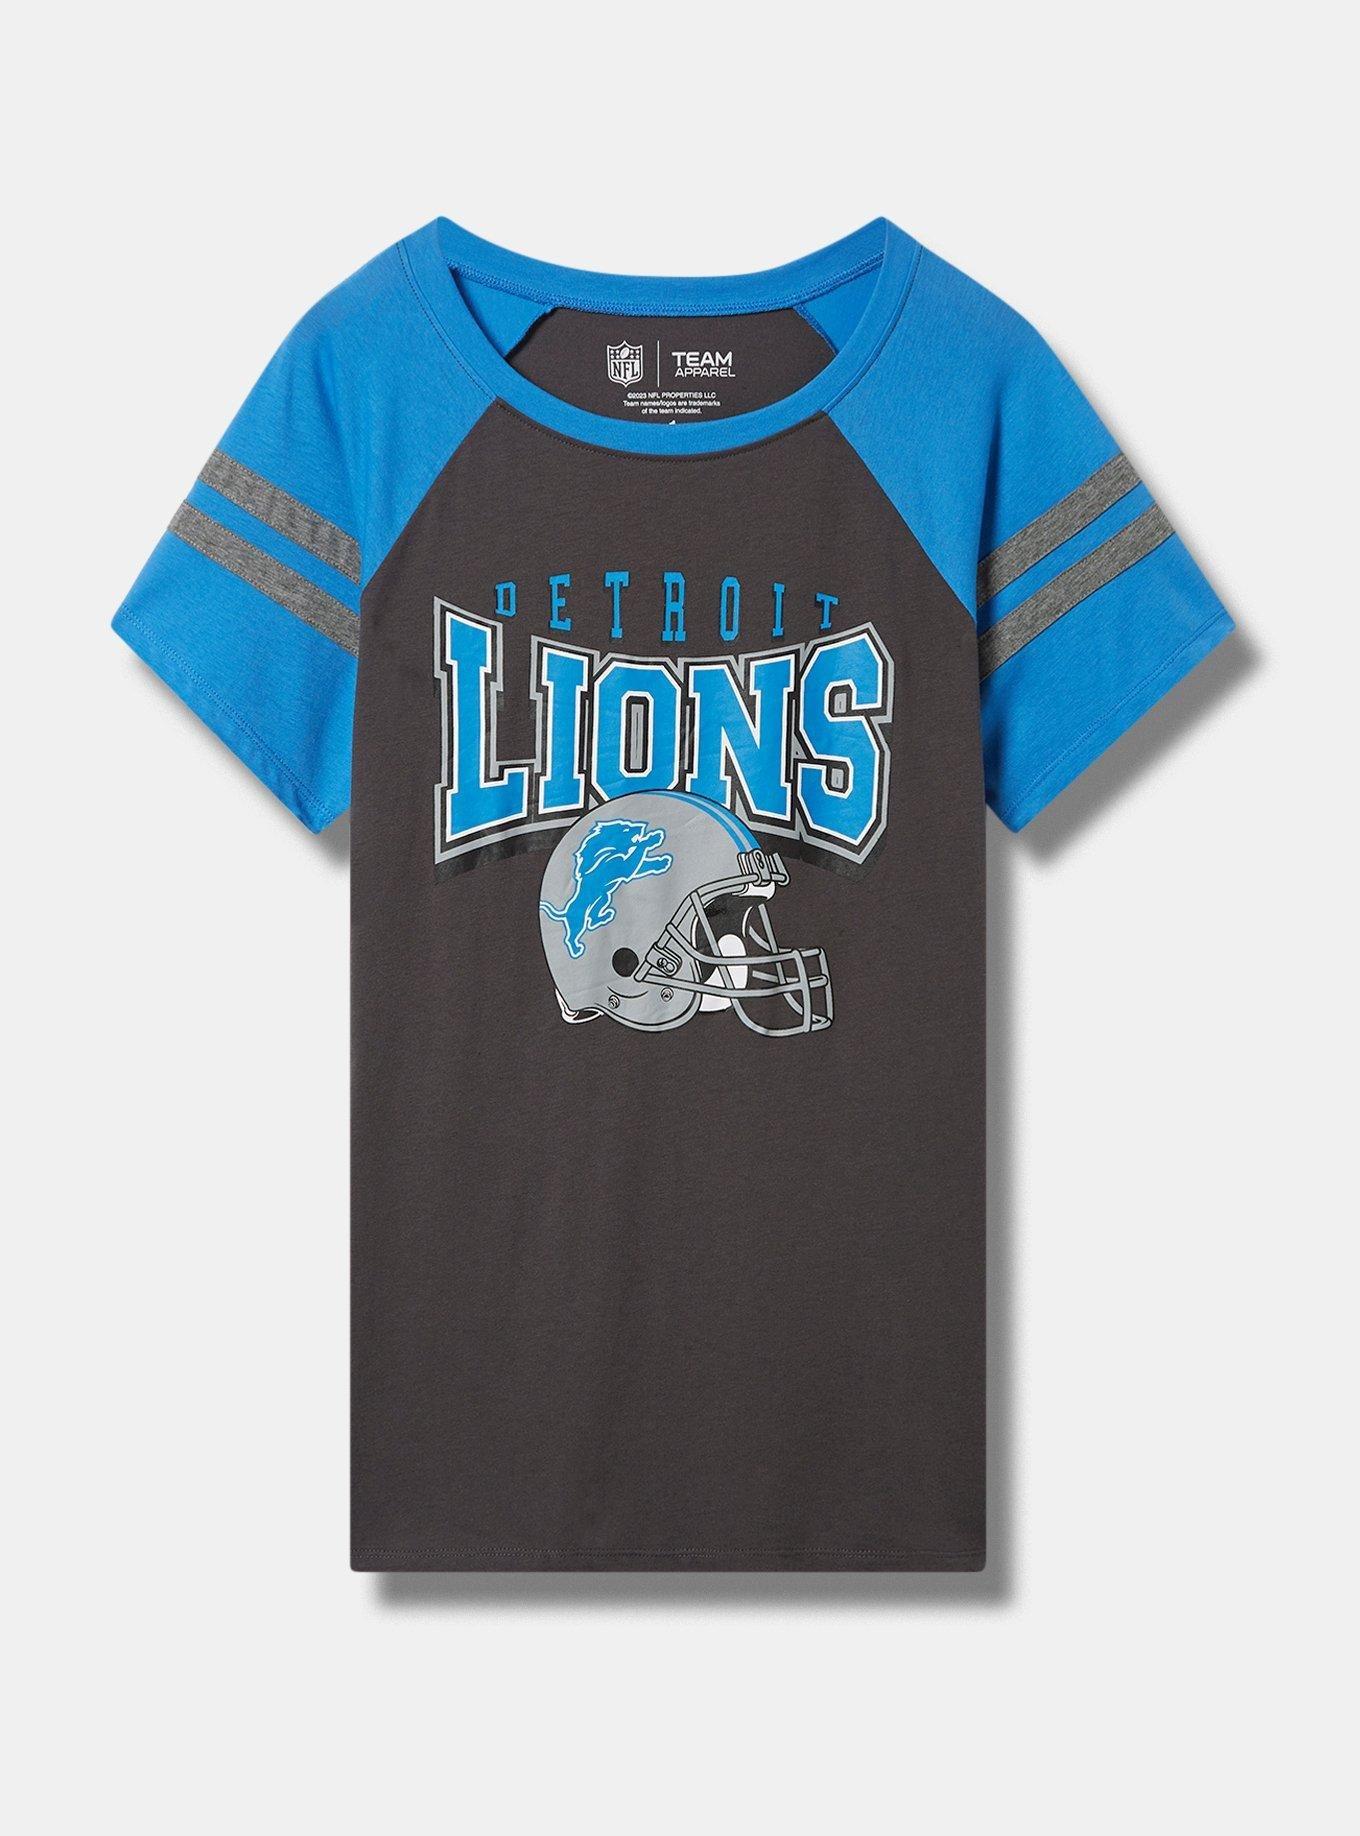 Detroit Lions Plus Size Apparel, Lions Extended Size Clothing